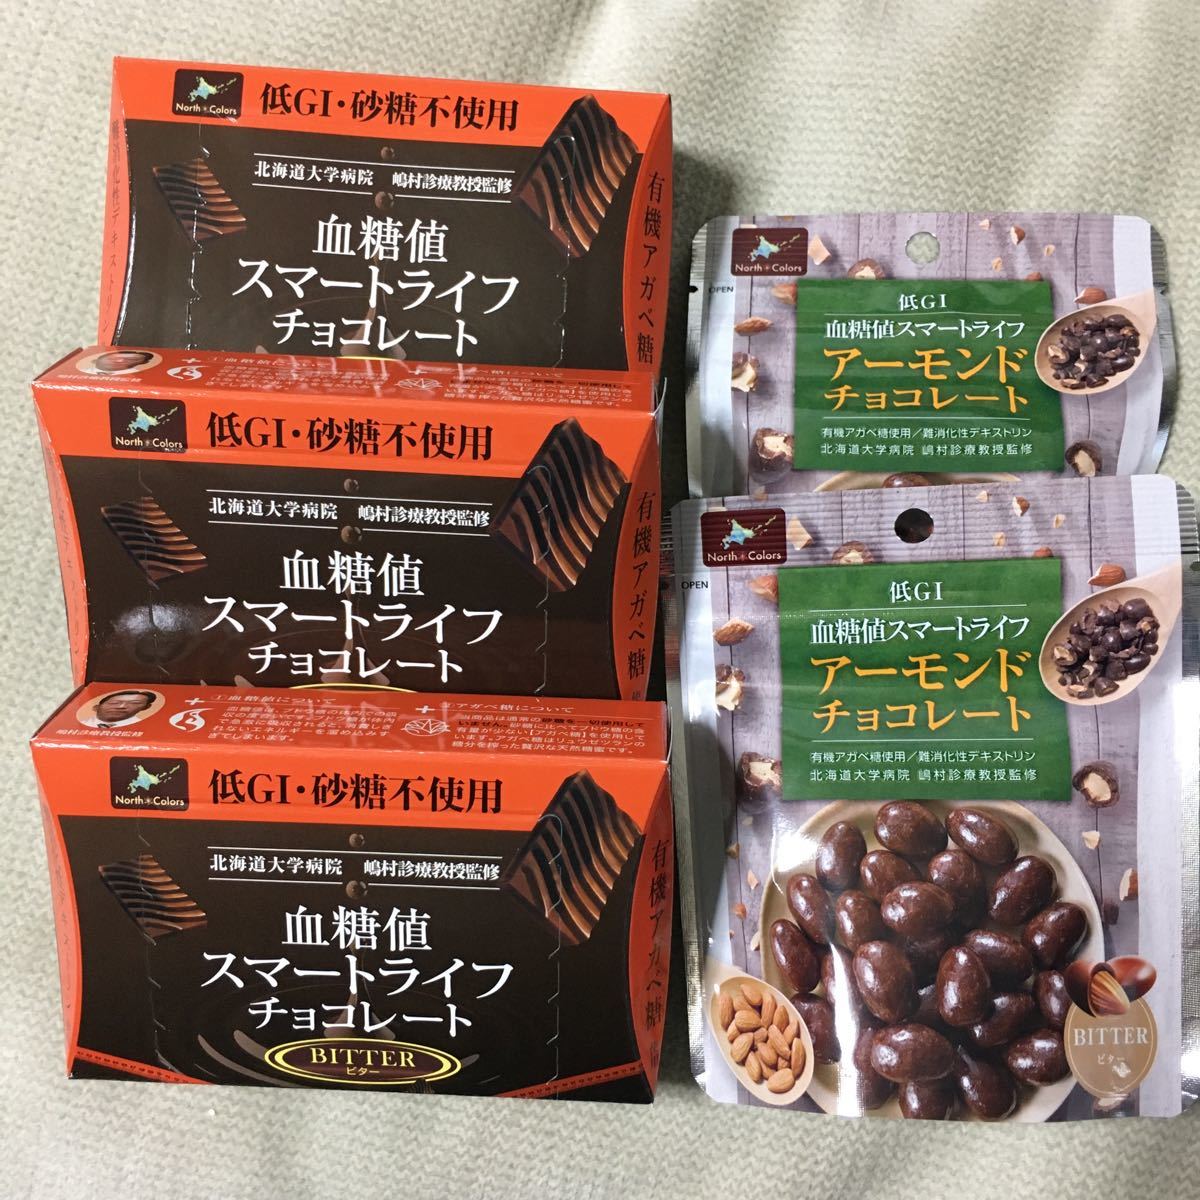 Paypayフリマ 血糖値スマートライフ チョコレート アーモンドチョコレート